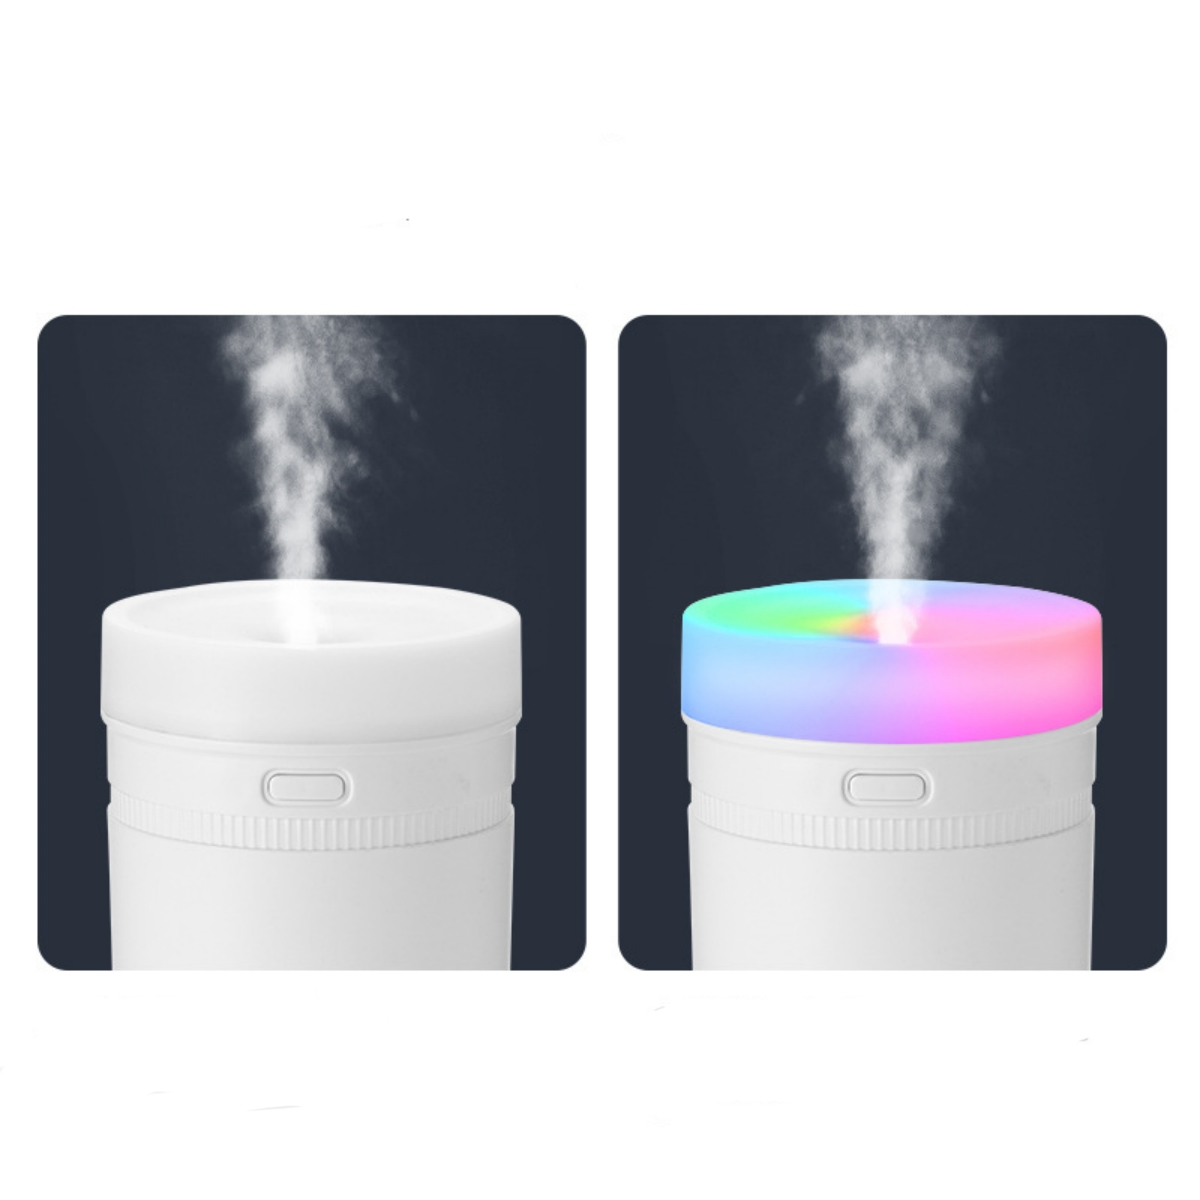 Starker Atmosphärenlichter, m²) Nebel und Bunte Luftbefeuchter, SYNTEK (Raumgröße: 10 Weiß Leiser USB-Aufladung, Luftbefeuchter